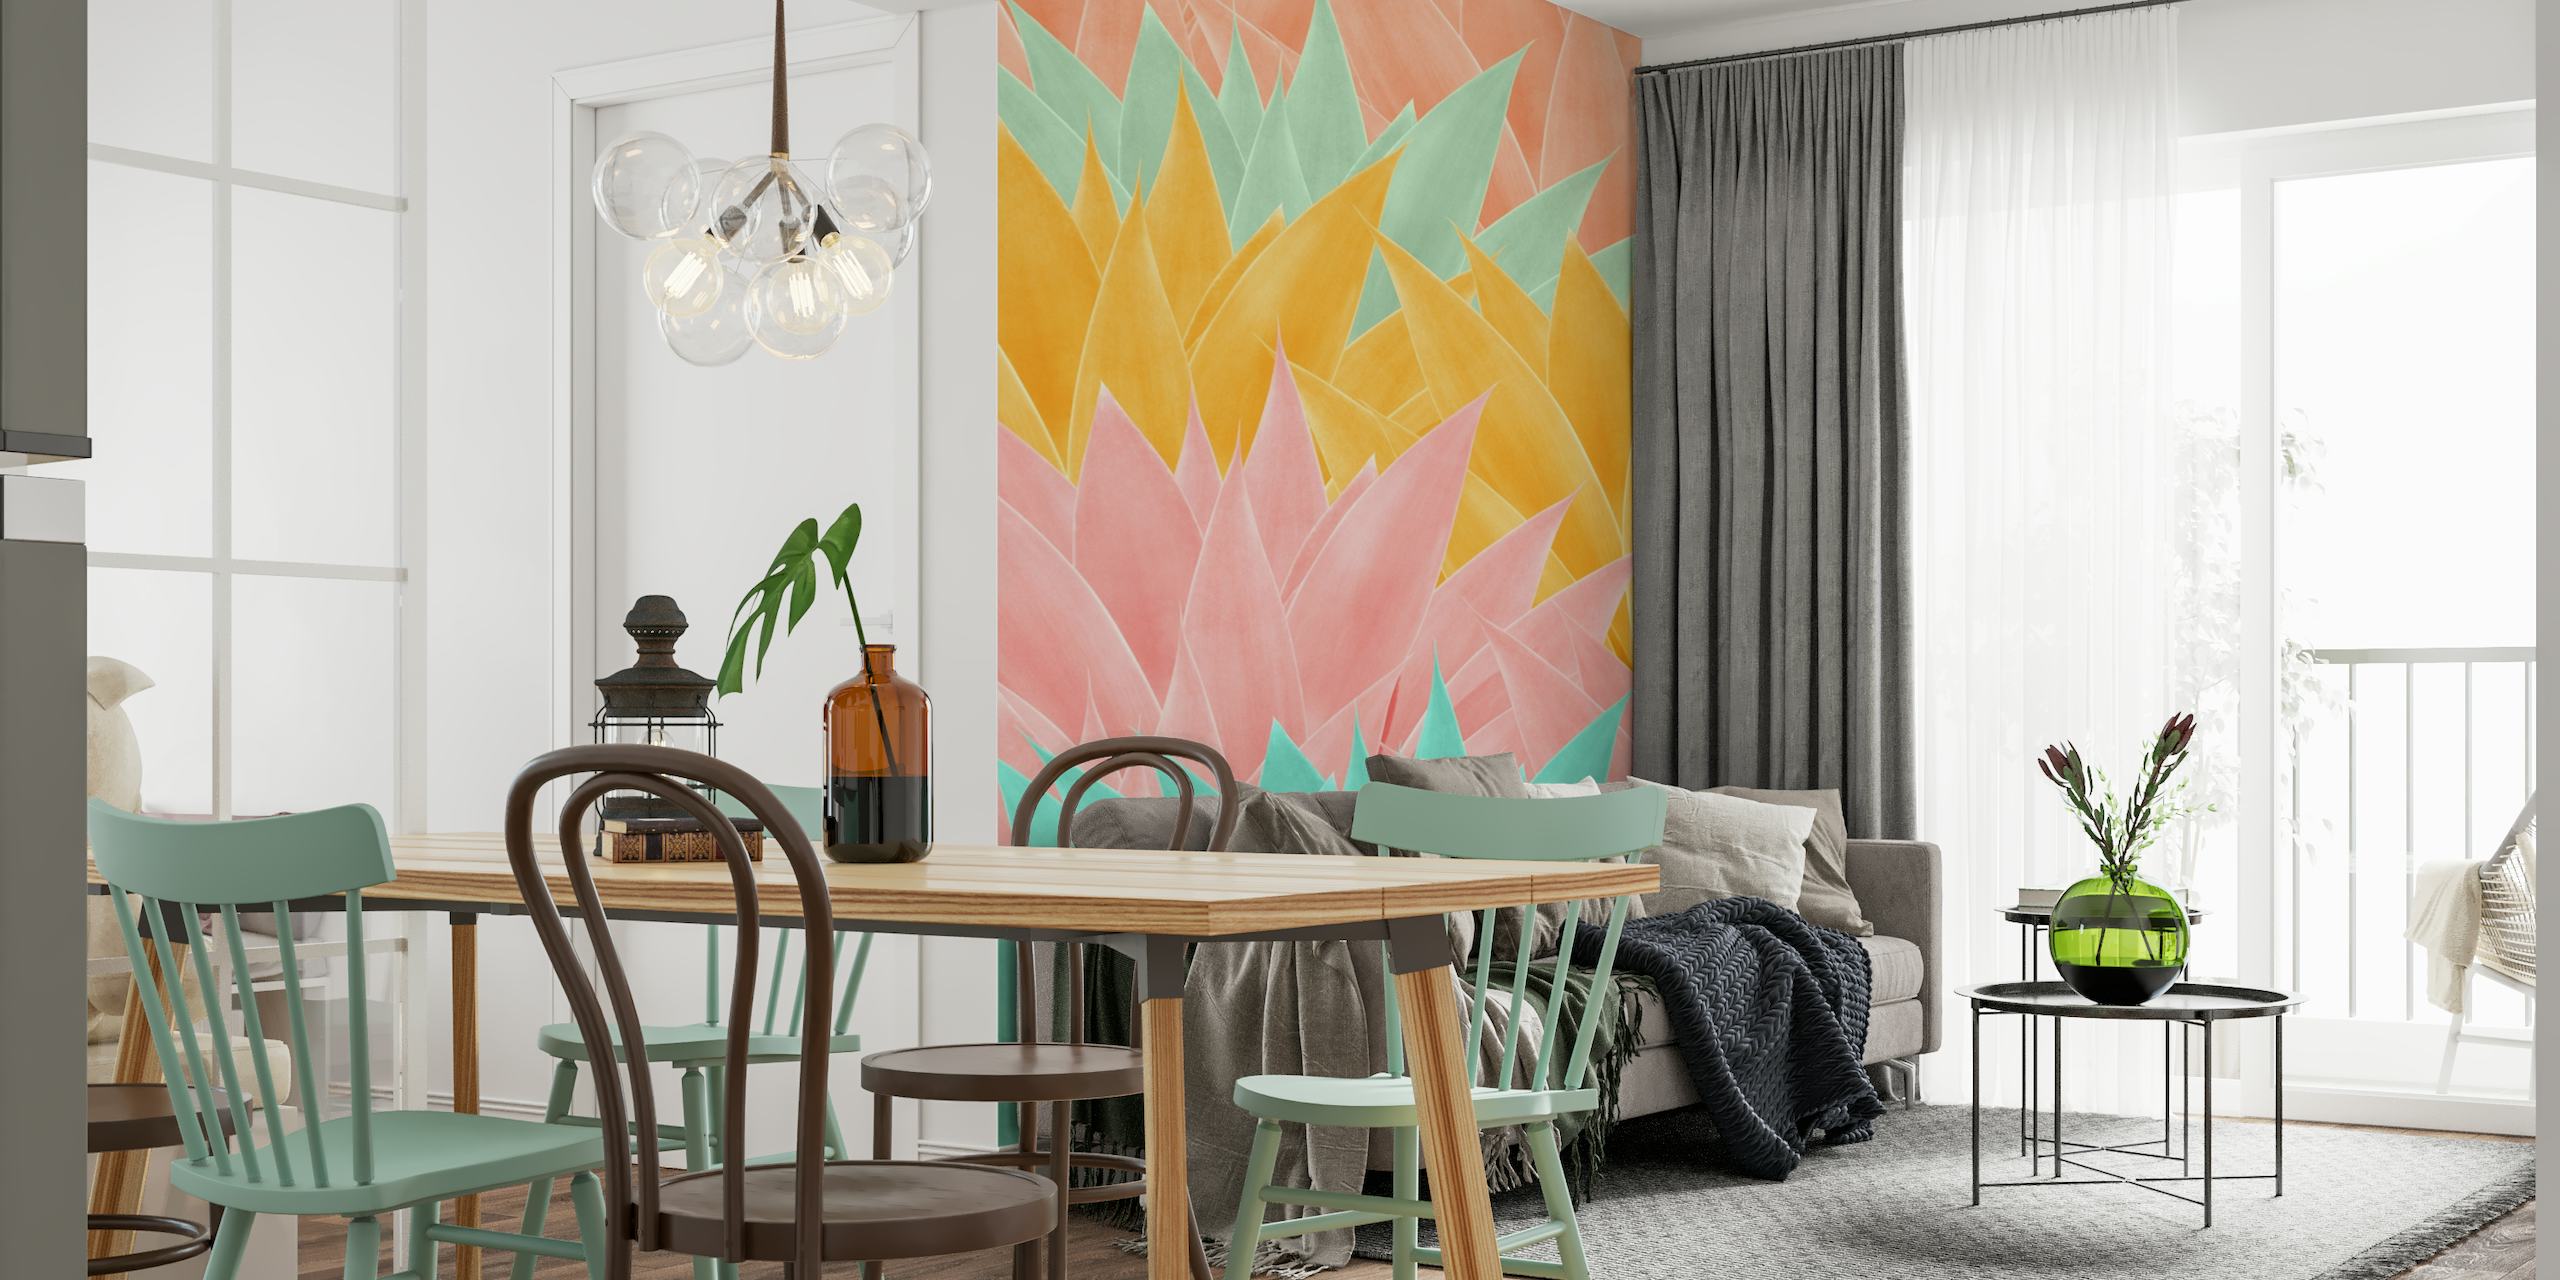 Farverigt vægmaleri med agavebladmønster i nuancer af pink, gul og aqua til moderne interiørdesign.